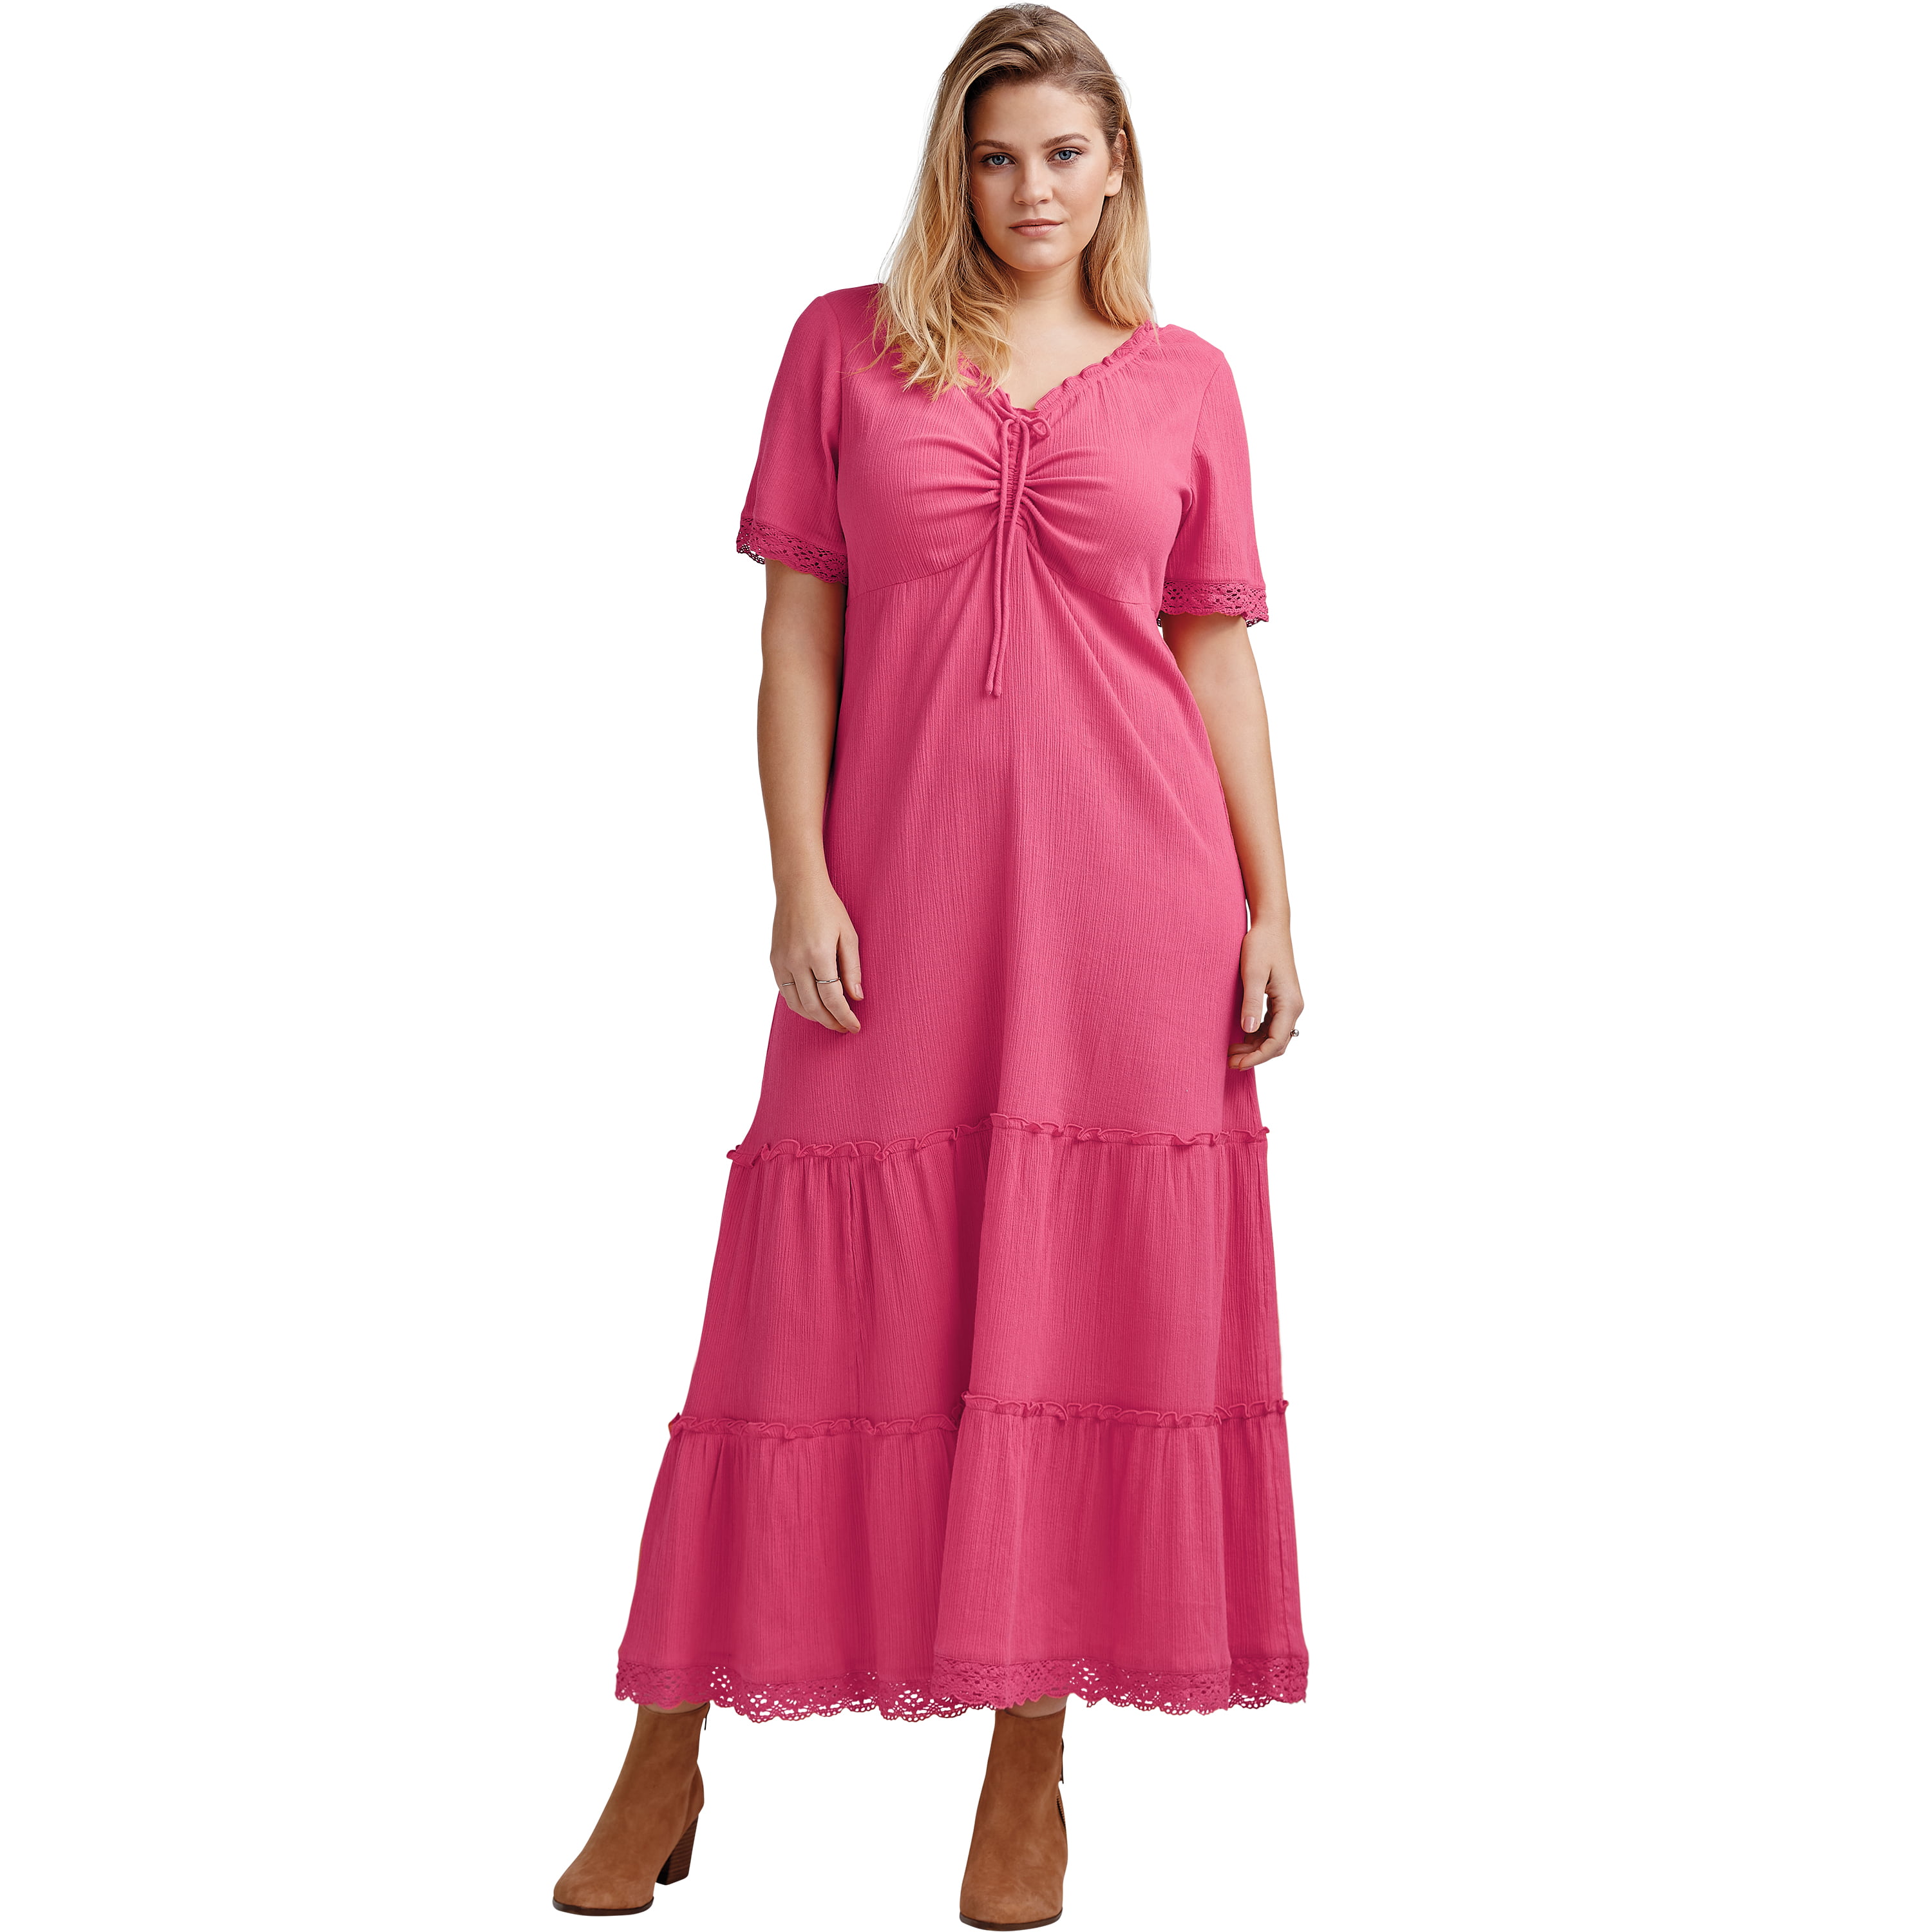 Ellos - ellos Women's Plus Size Gauze Maxi Dress - Walmart.com ...